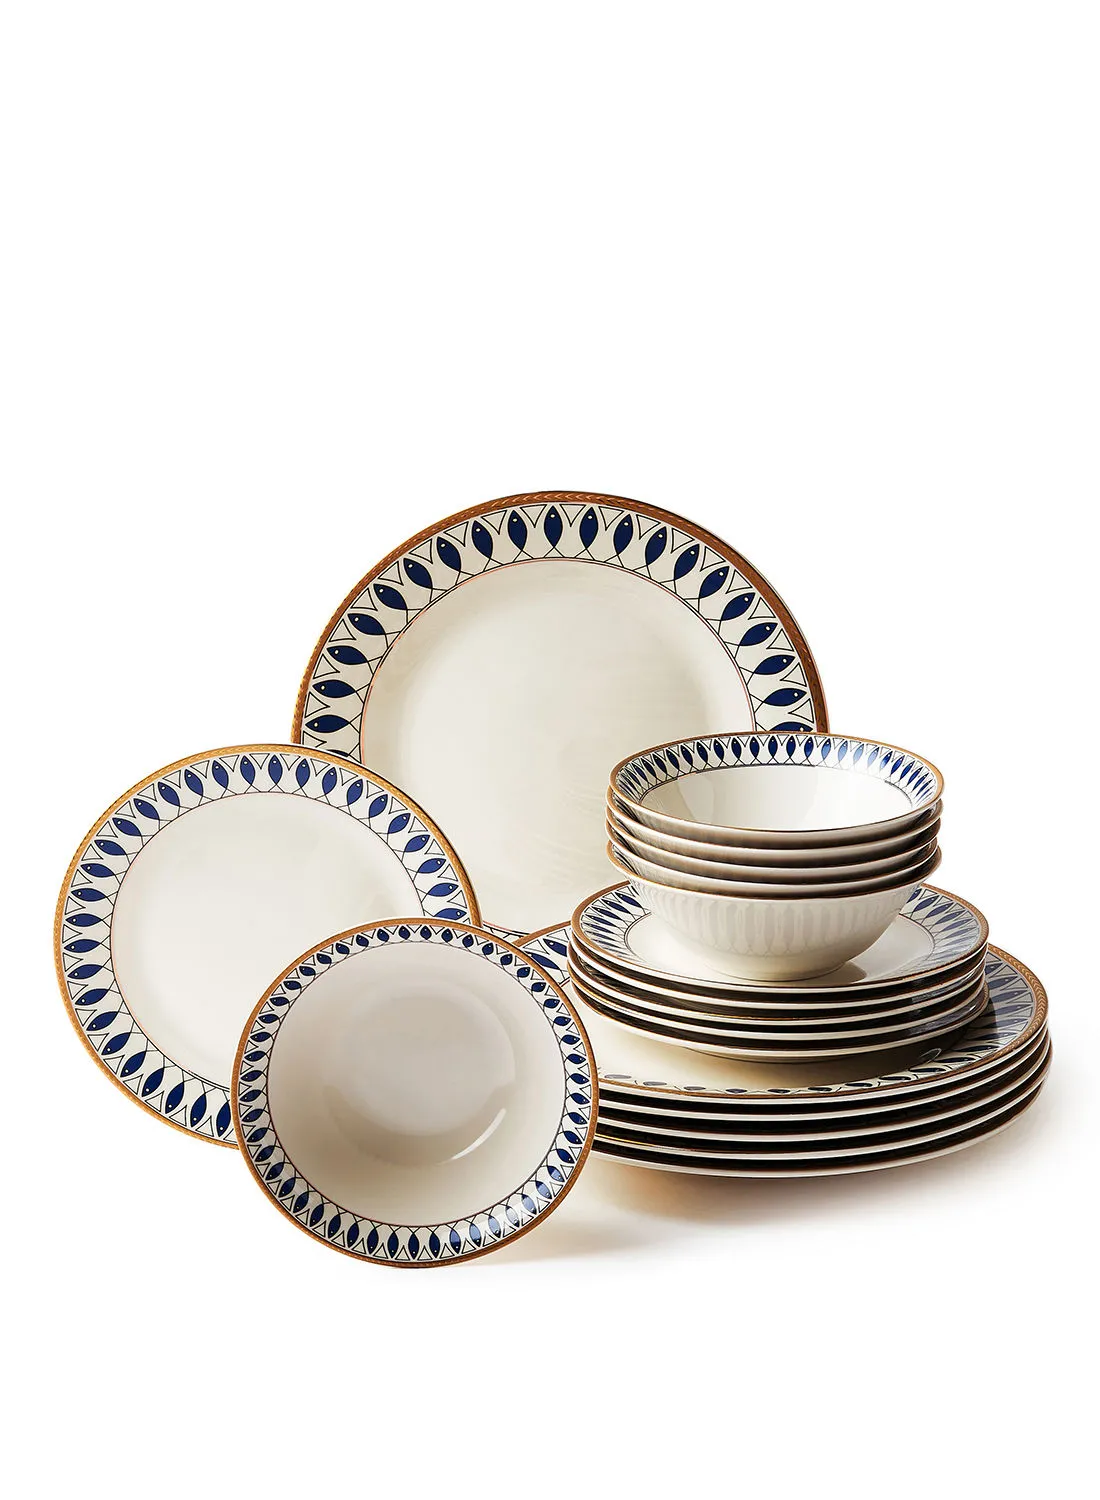 noon east 18 Piece Porcelain Dinner Set - Dishes, Plates - Dinner Plate, Side Plate, Bowl - Serves 6 - Printed Design Santorini